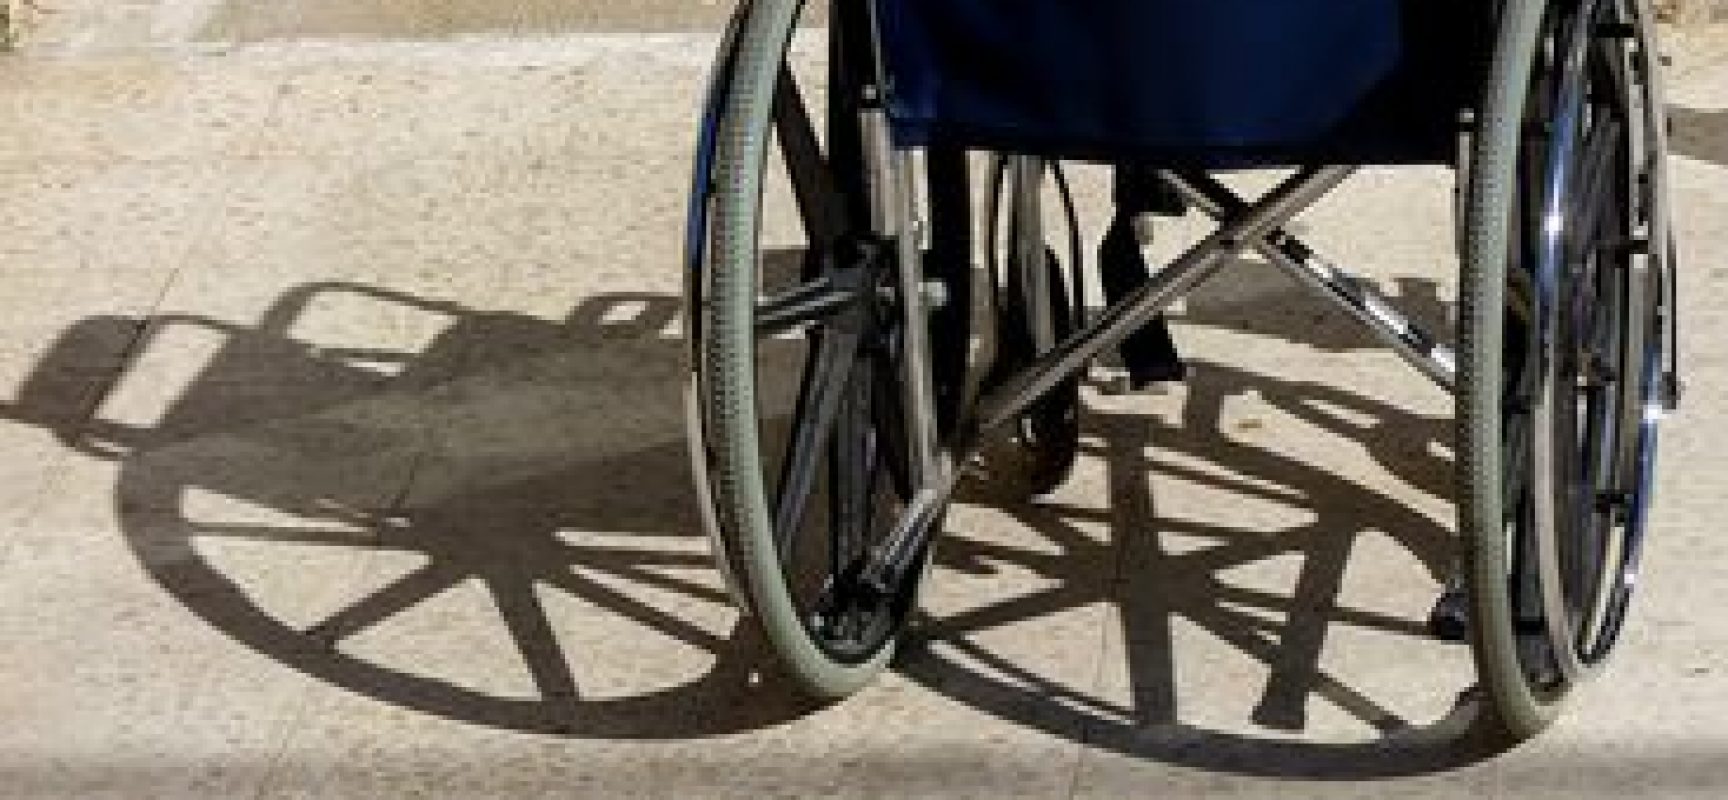 Agressor de mulher com deficiência pode ter pena aumentada, avalia especialista